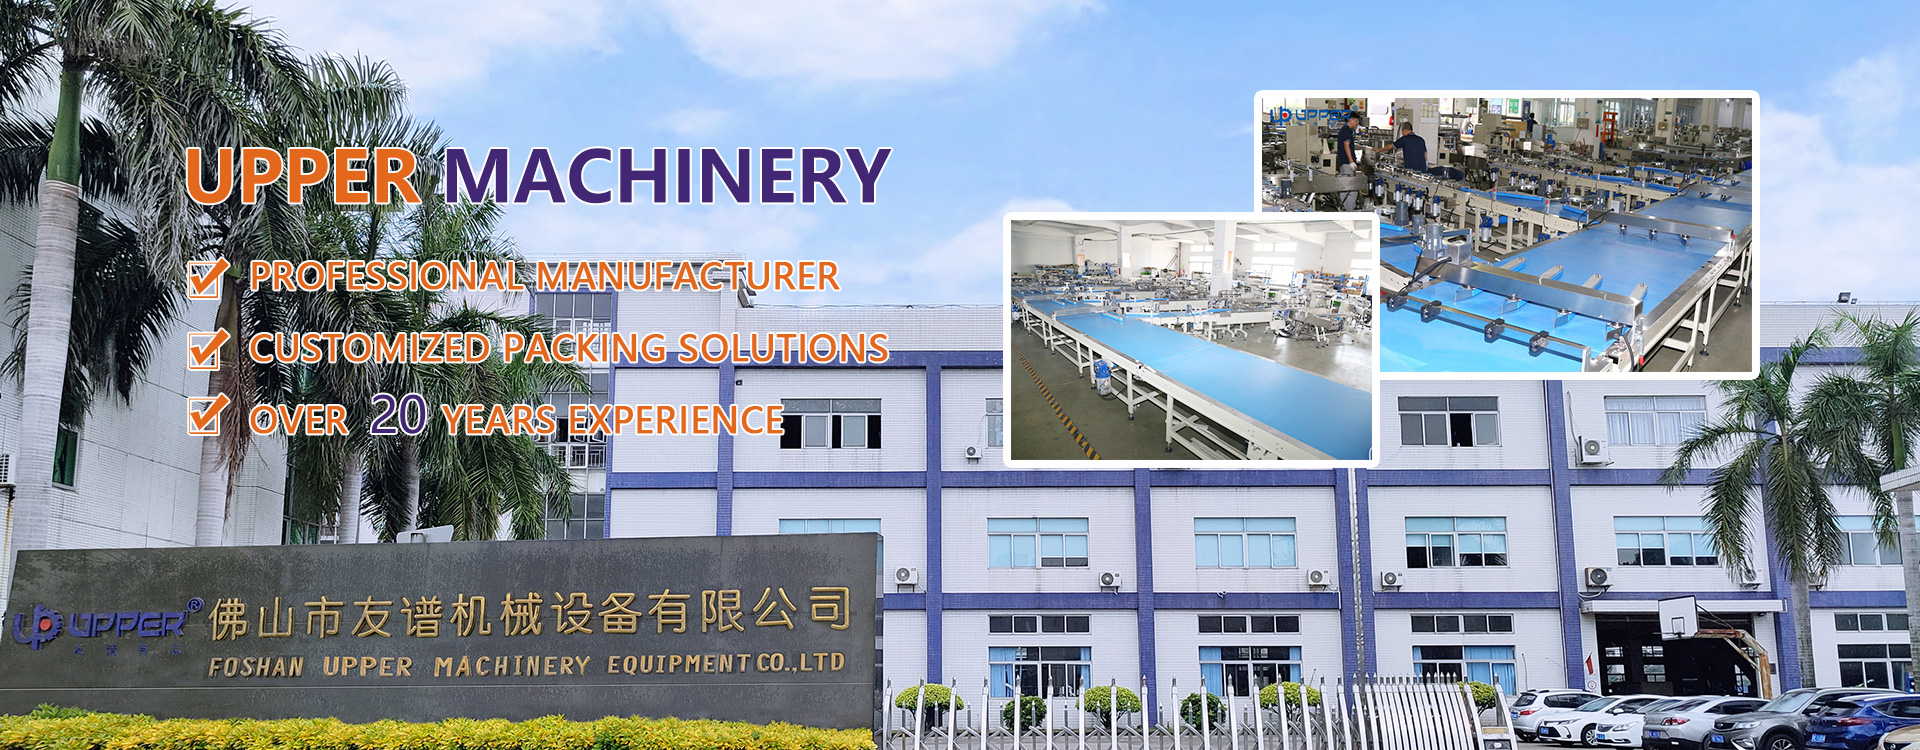 Foshan Upper Machinery Equipment Co., Ltd. 